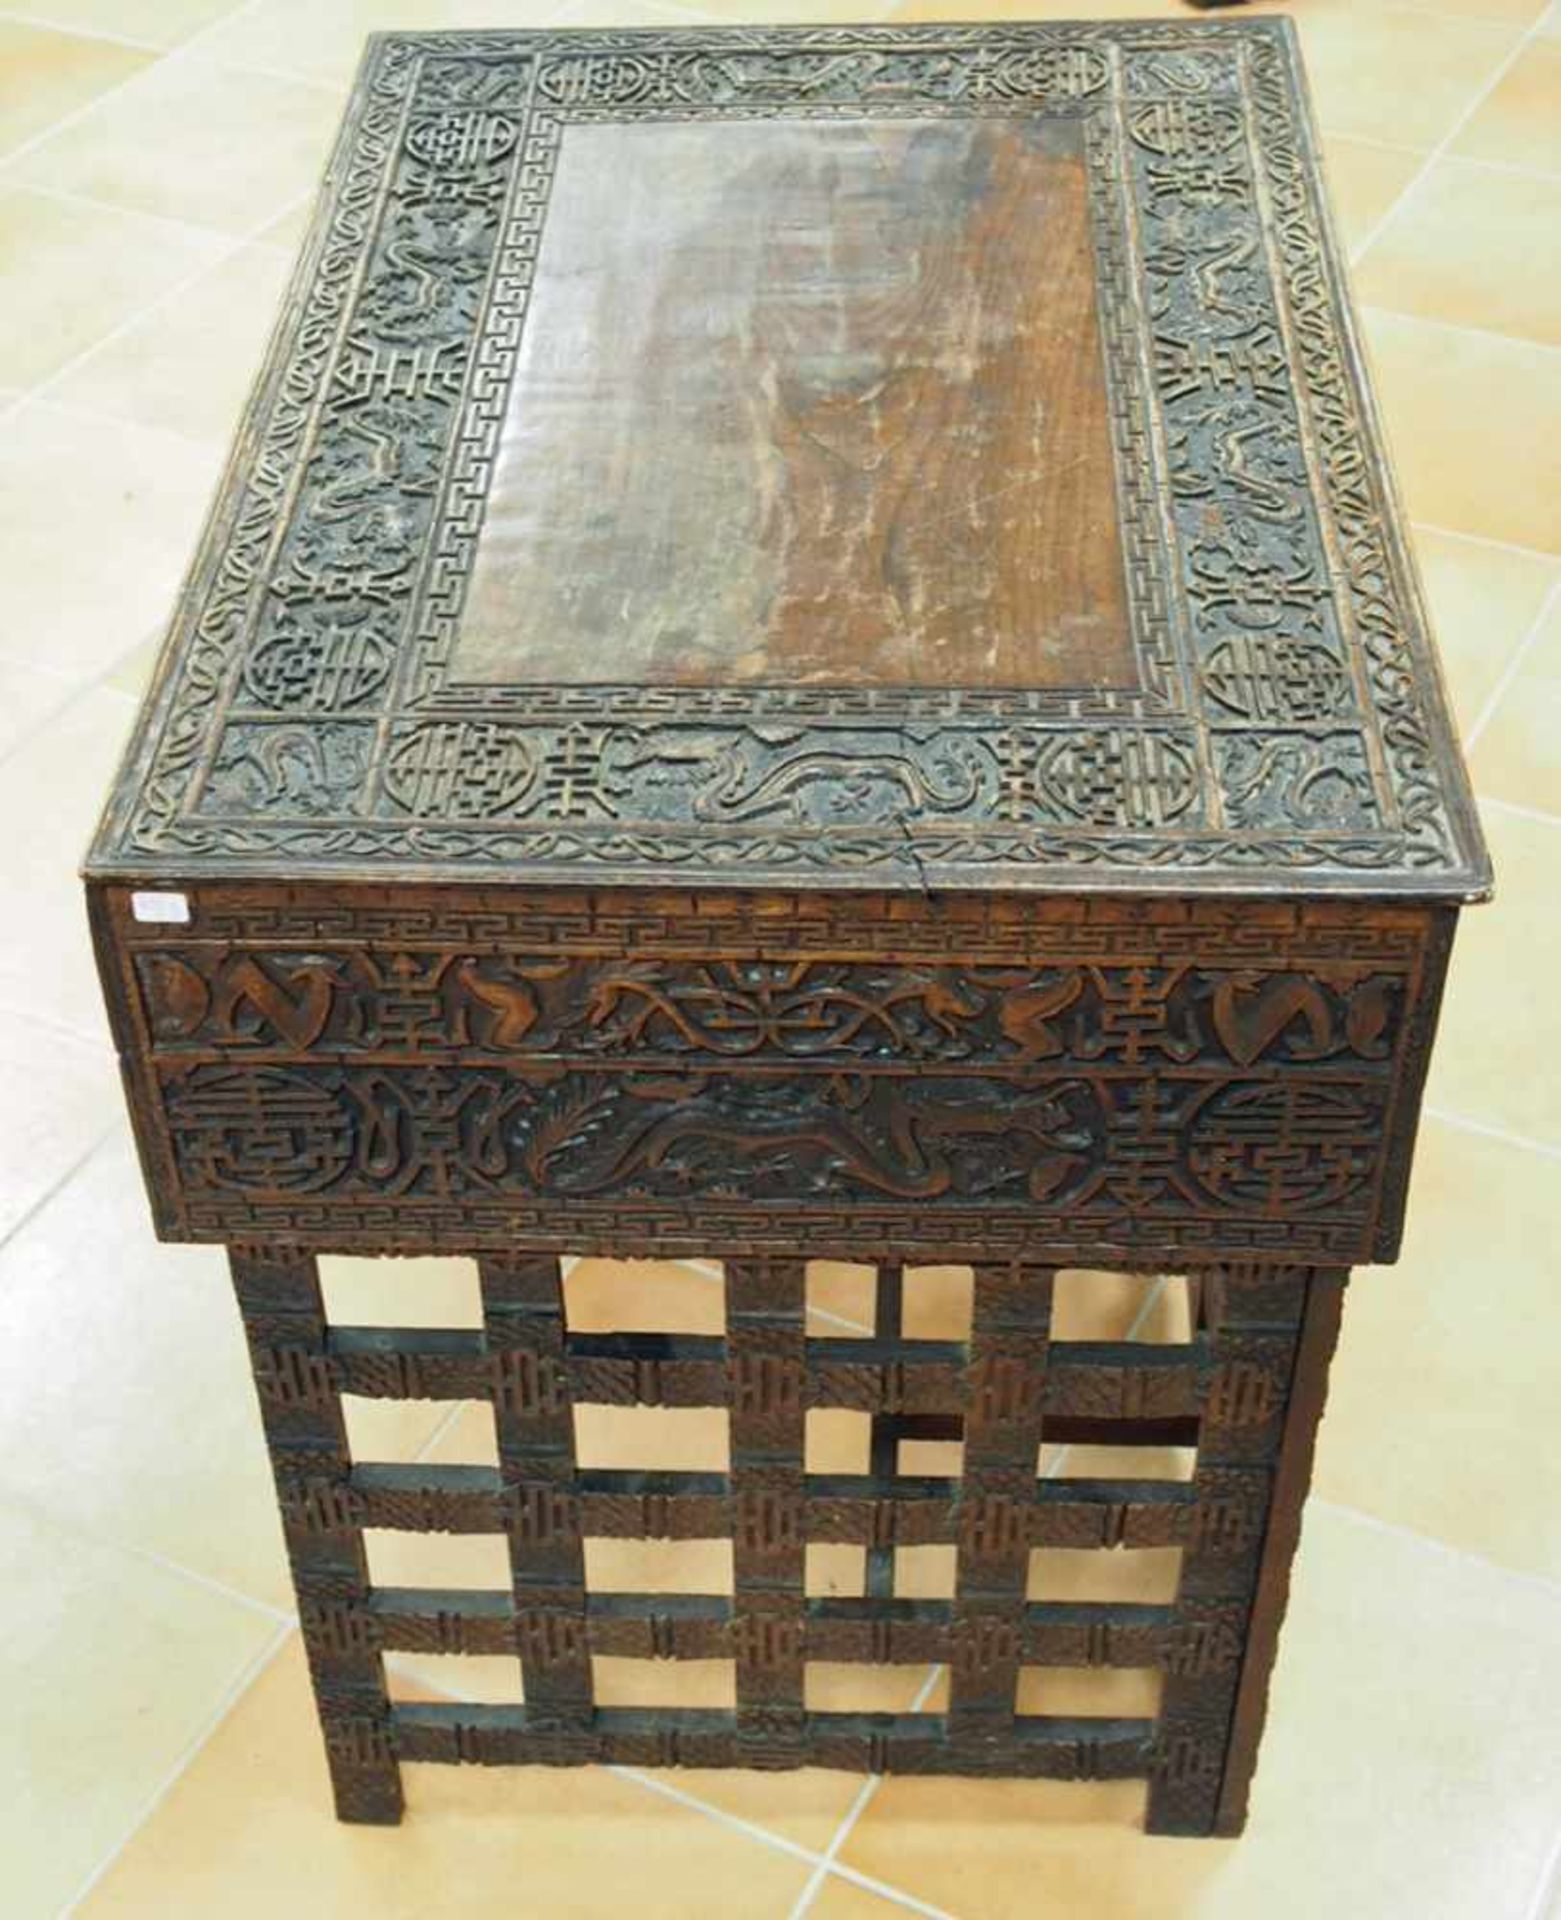 Chinesischer Tisch mit Schublademit Drachenmotiven, Holz, geschnitzt, um 1850, 62 x 68 x 47 cm - Image 3 of 3